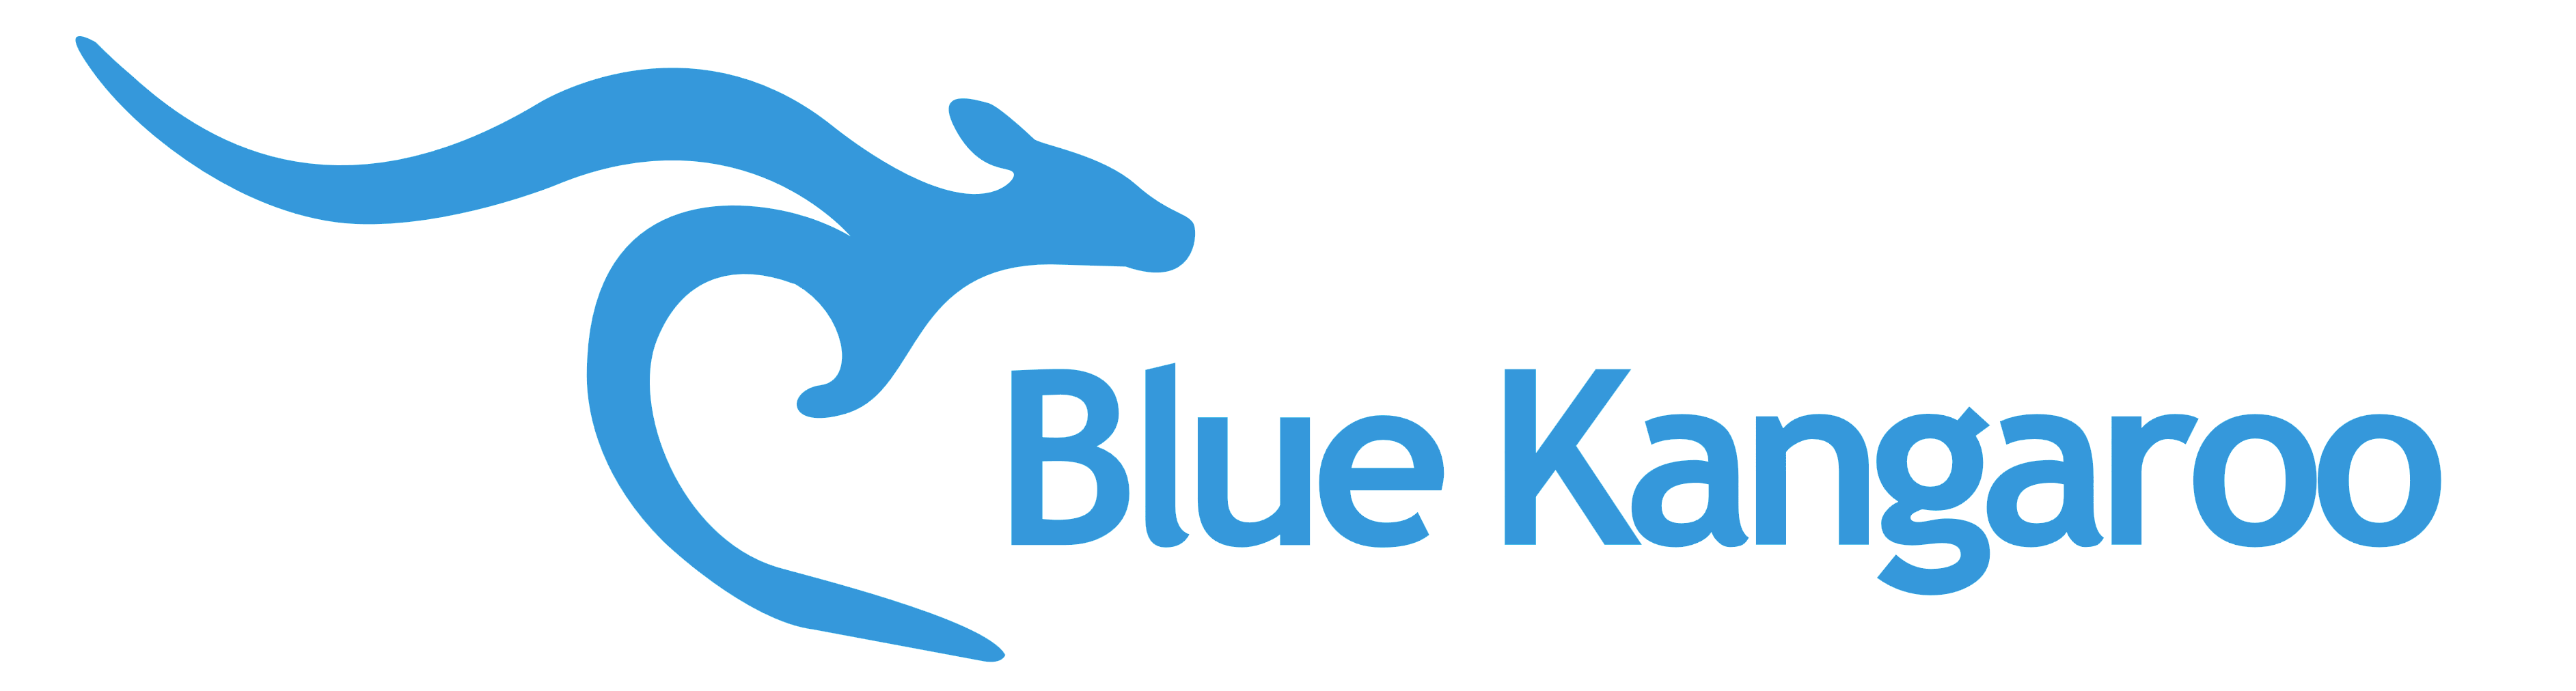 Blue Kangaroo Logo - Blue Kangaroo – Logos Download